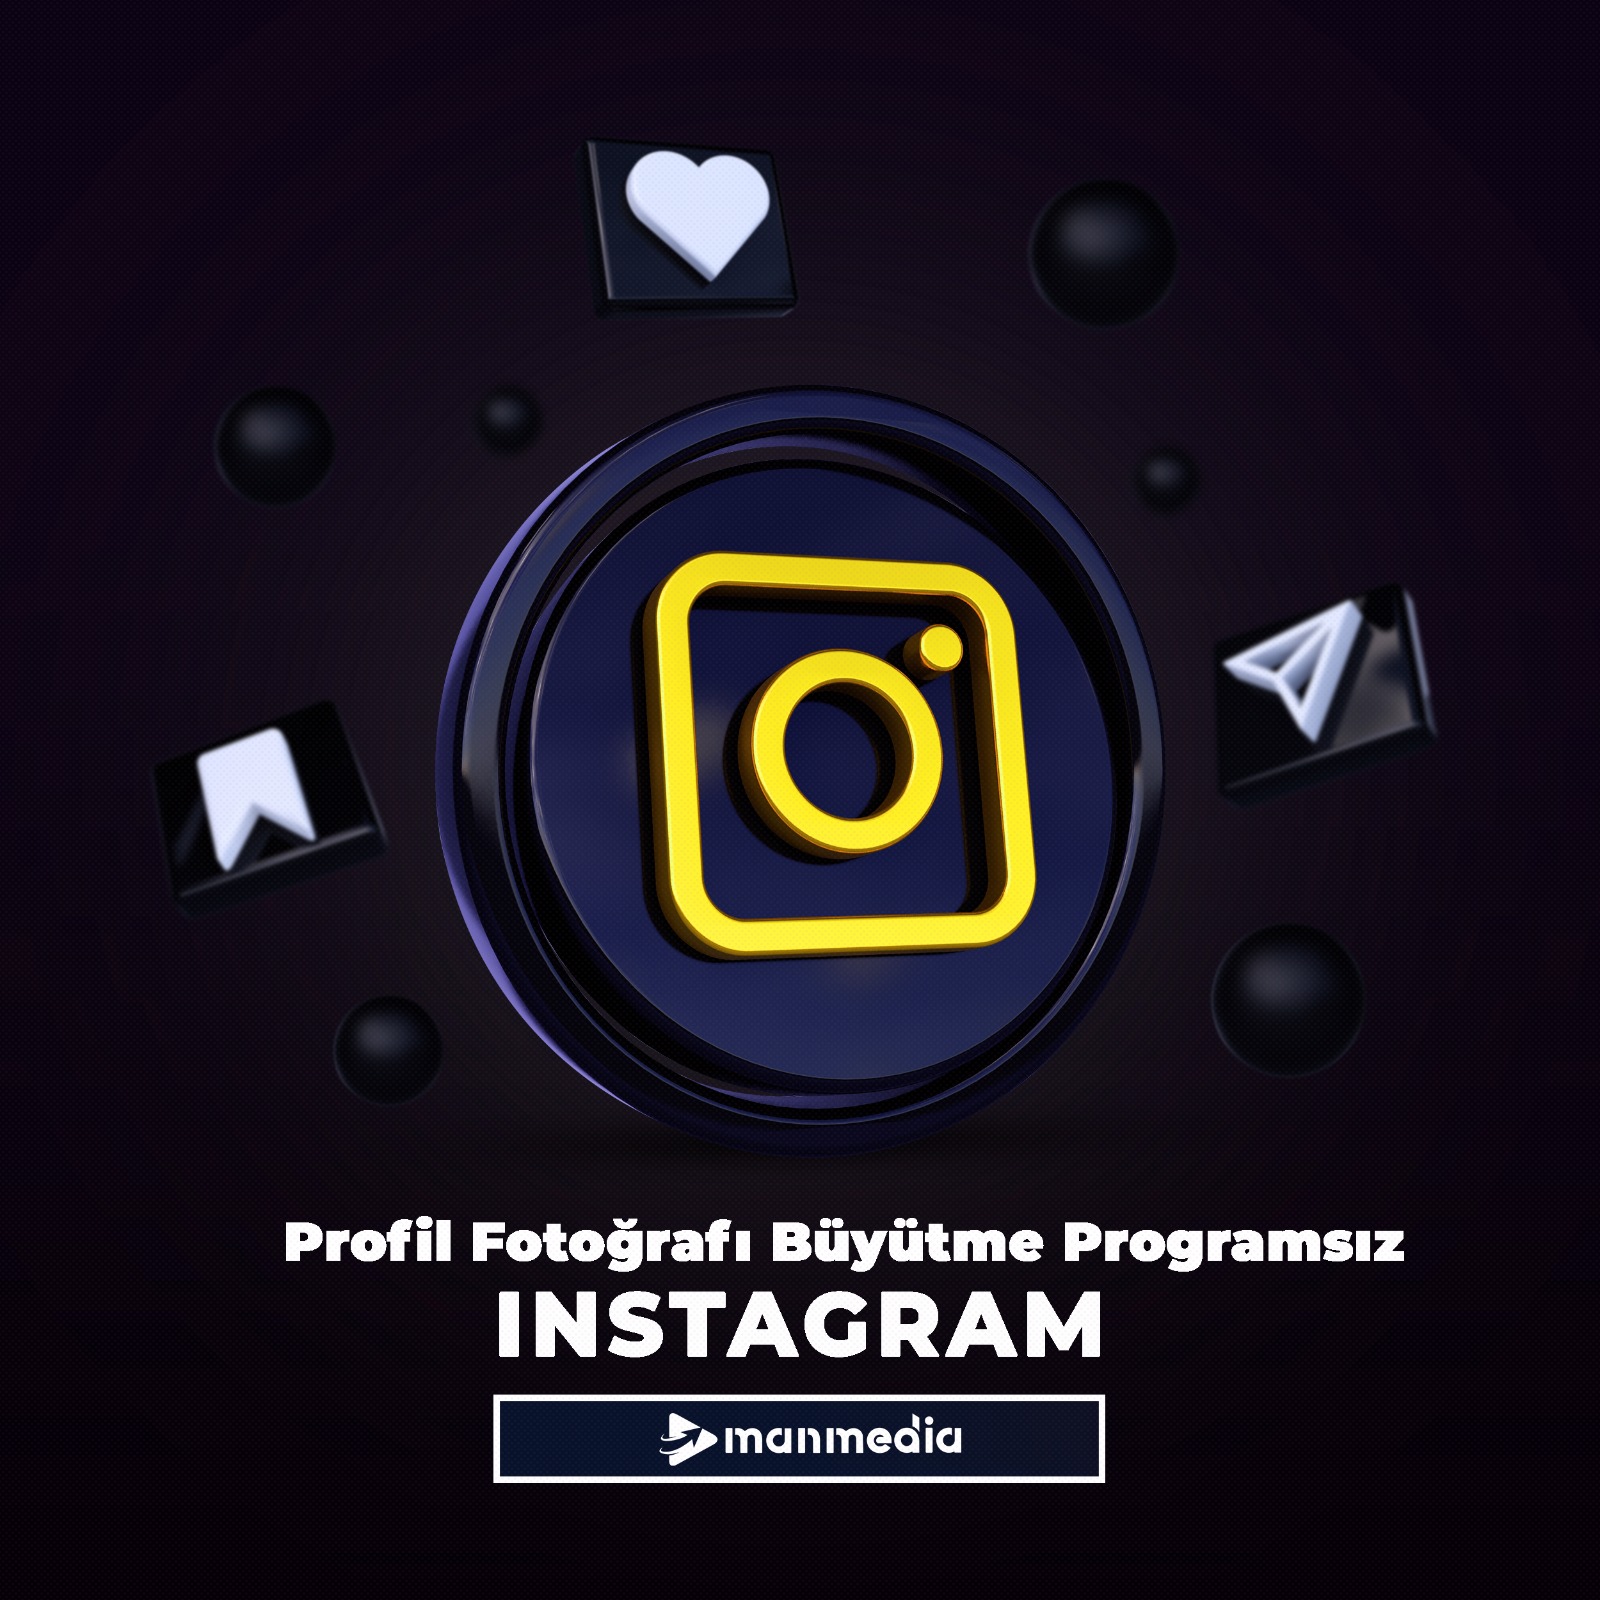 Instagram profil fotoğrafı büyütme programsız